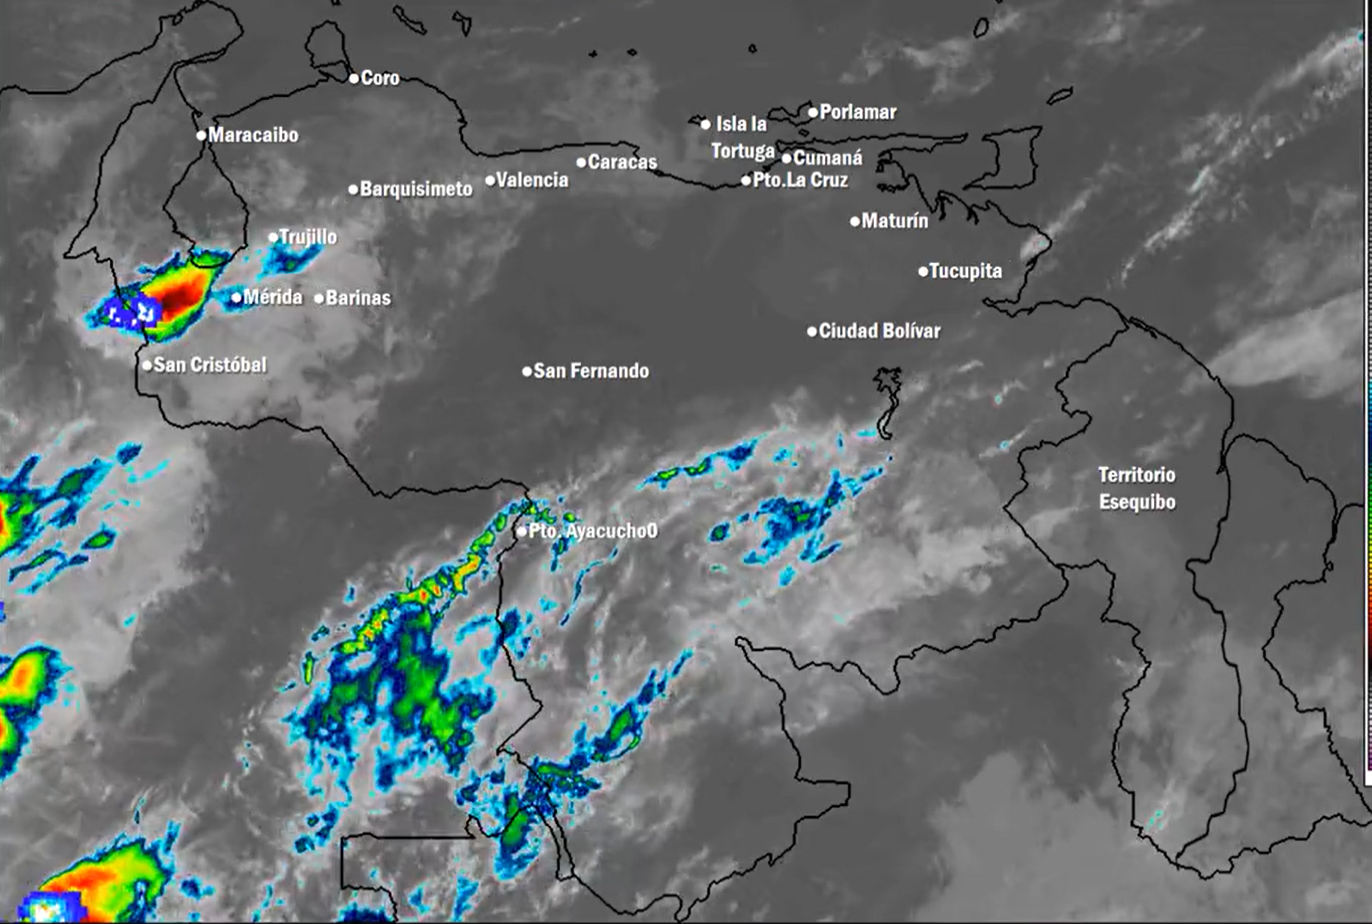 Inameh prevé nubosidad y baja probabilidad de lluvias en algunas zonas de Venezuela este #6Abr